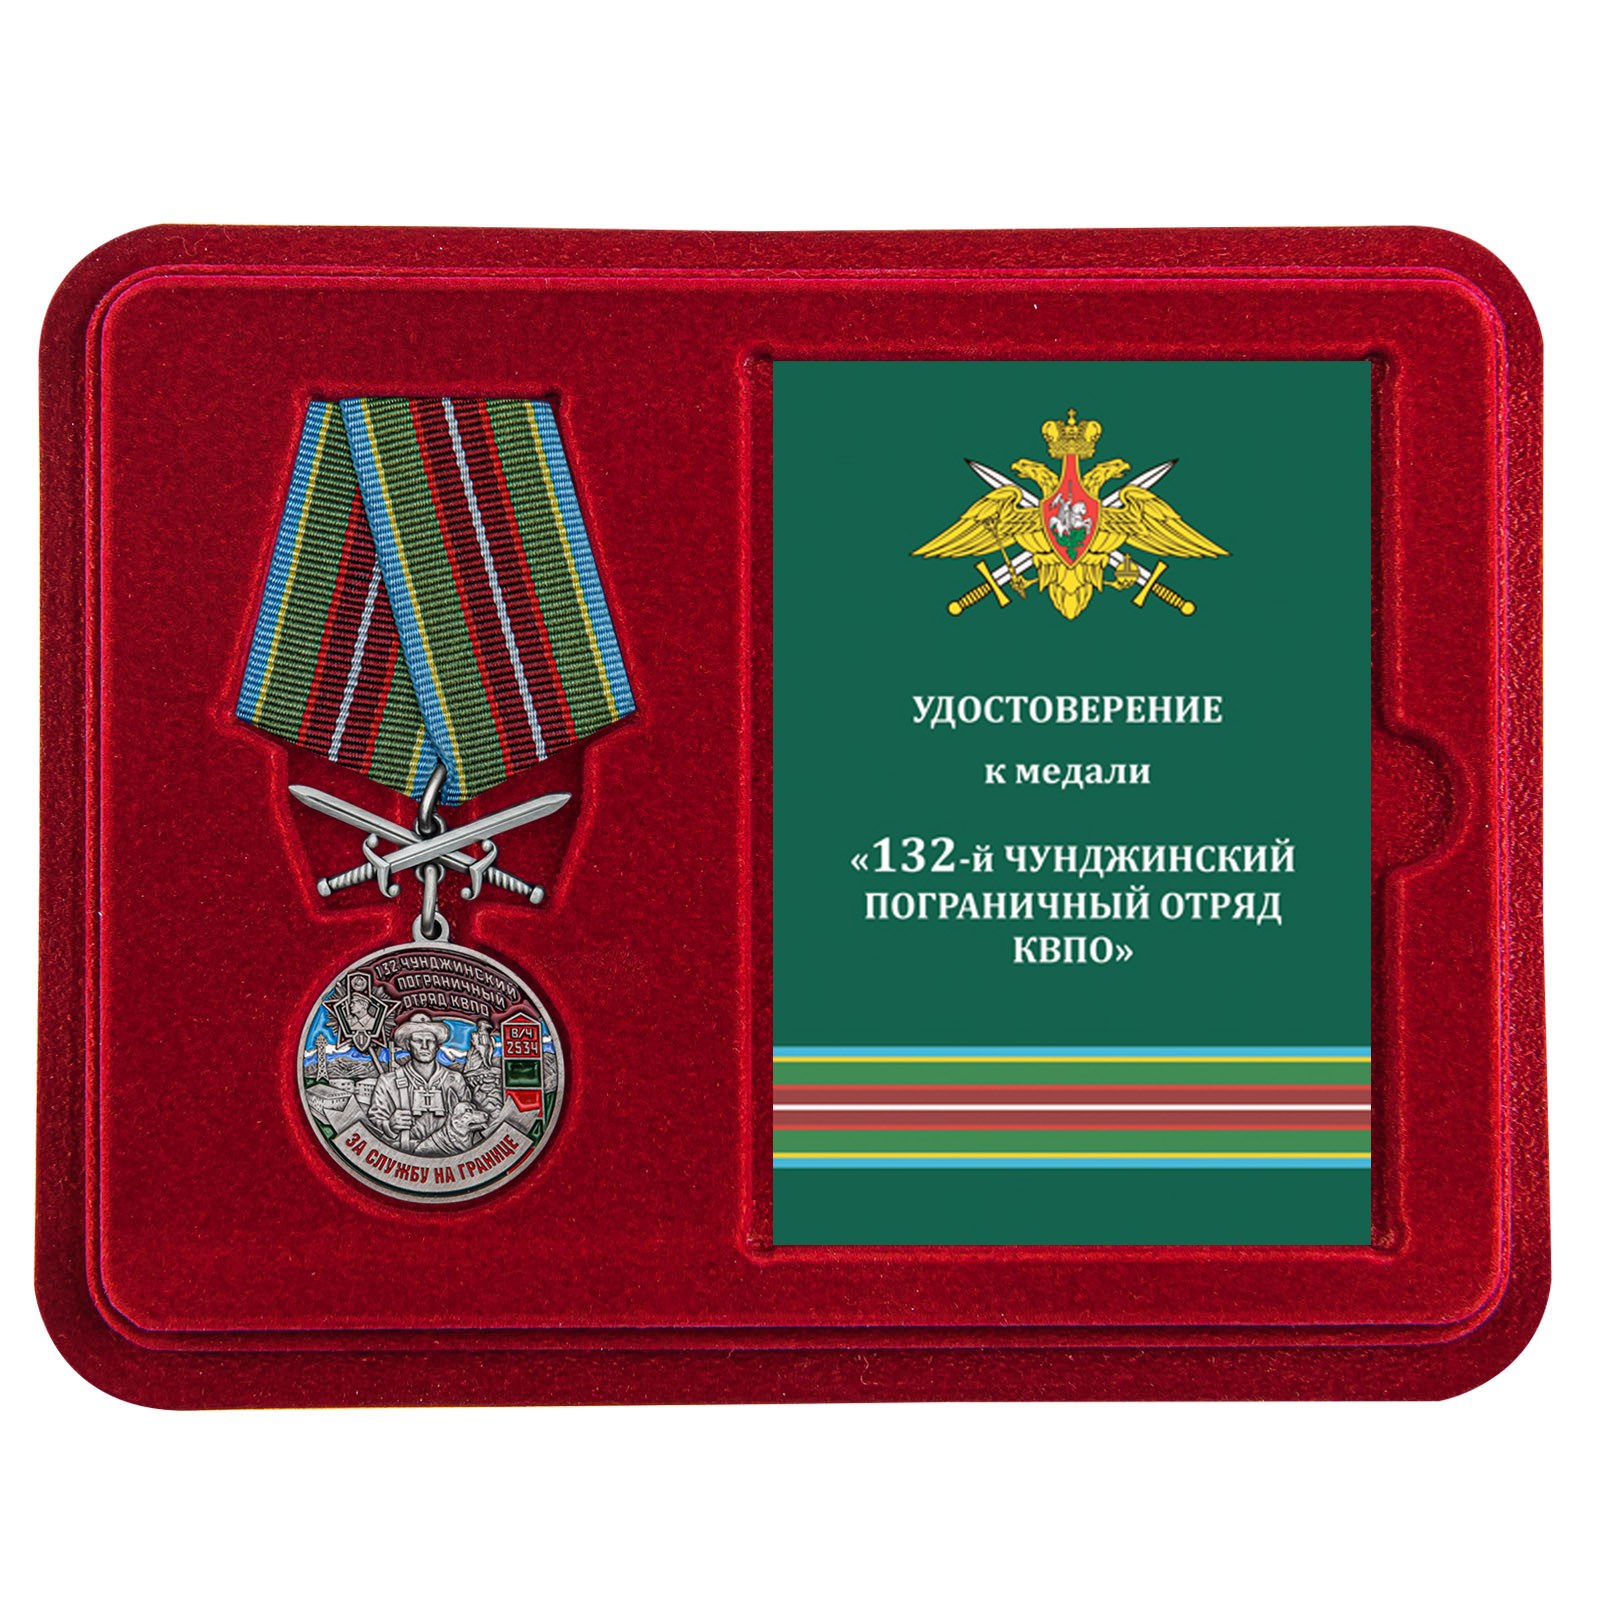 Купить медаль За службу в Чунджинском пограничном отряде онлайн